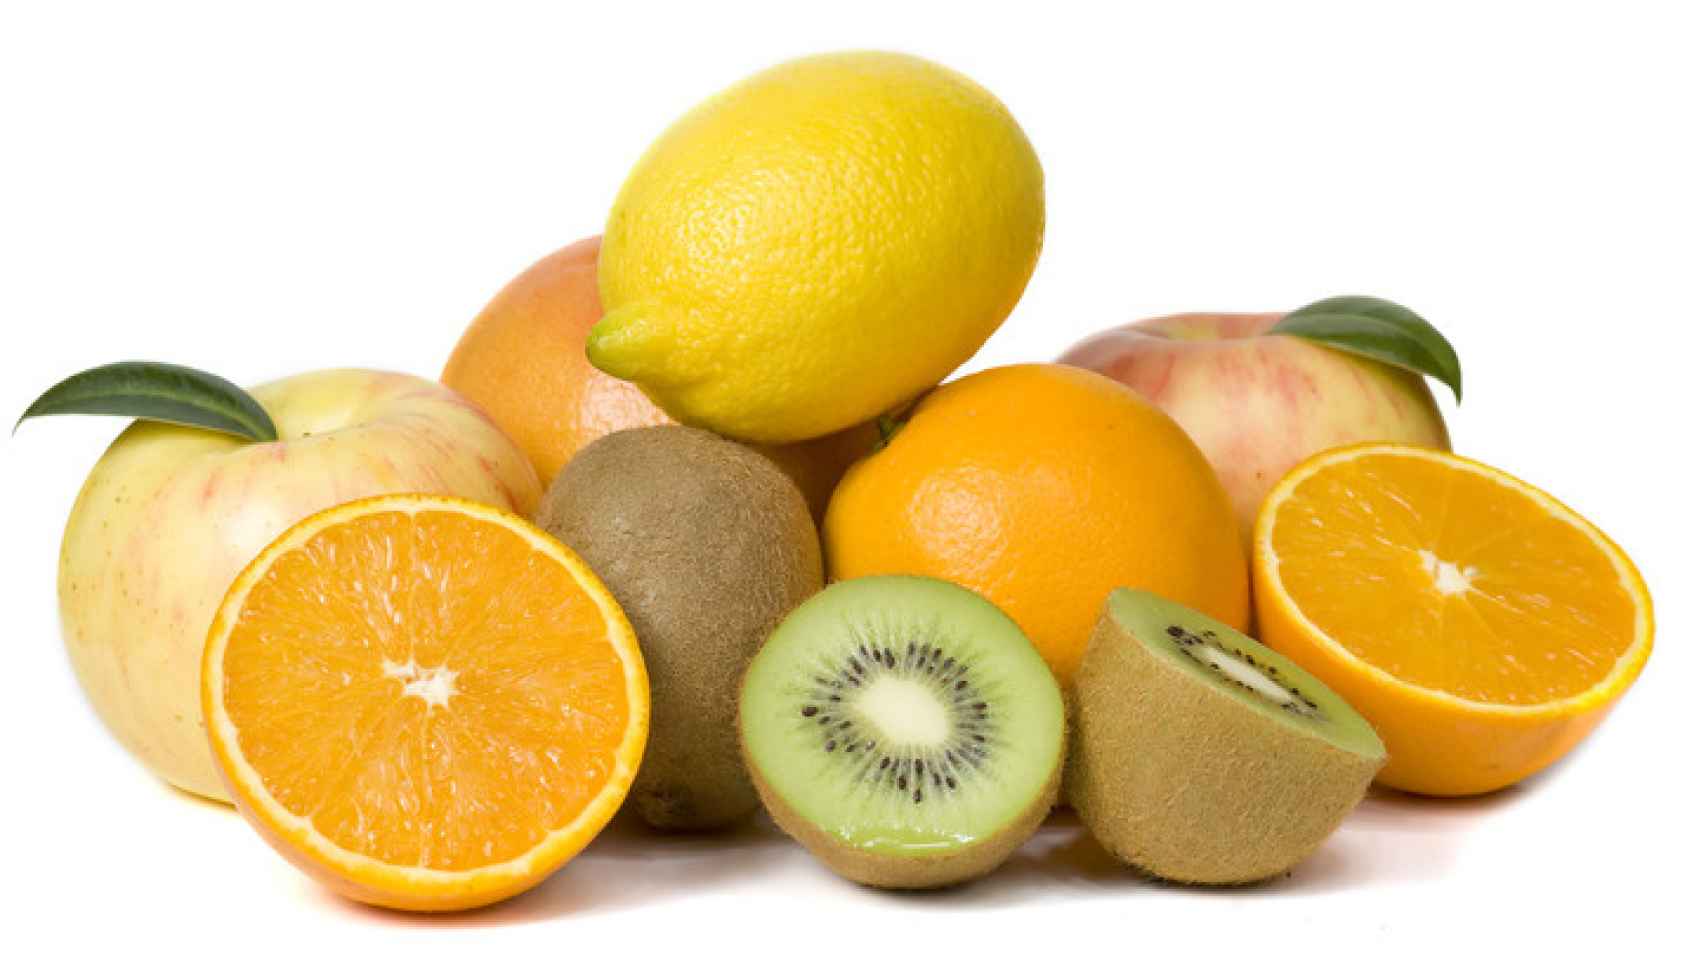 Foto de archivo de naranjas, limones y kiwis.